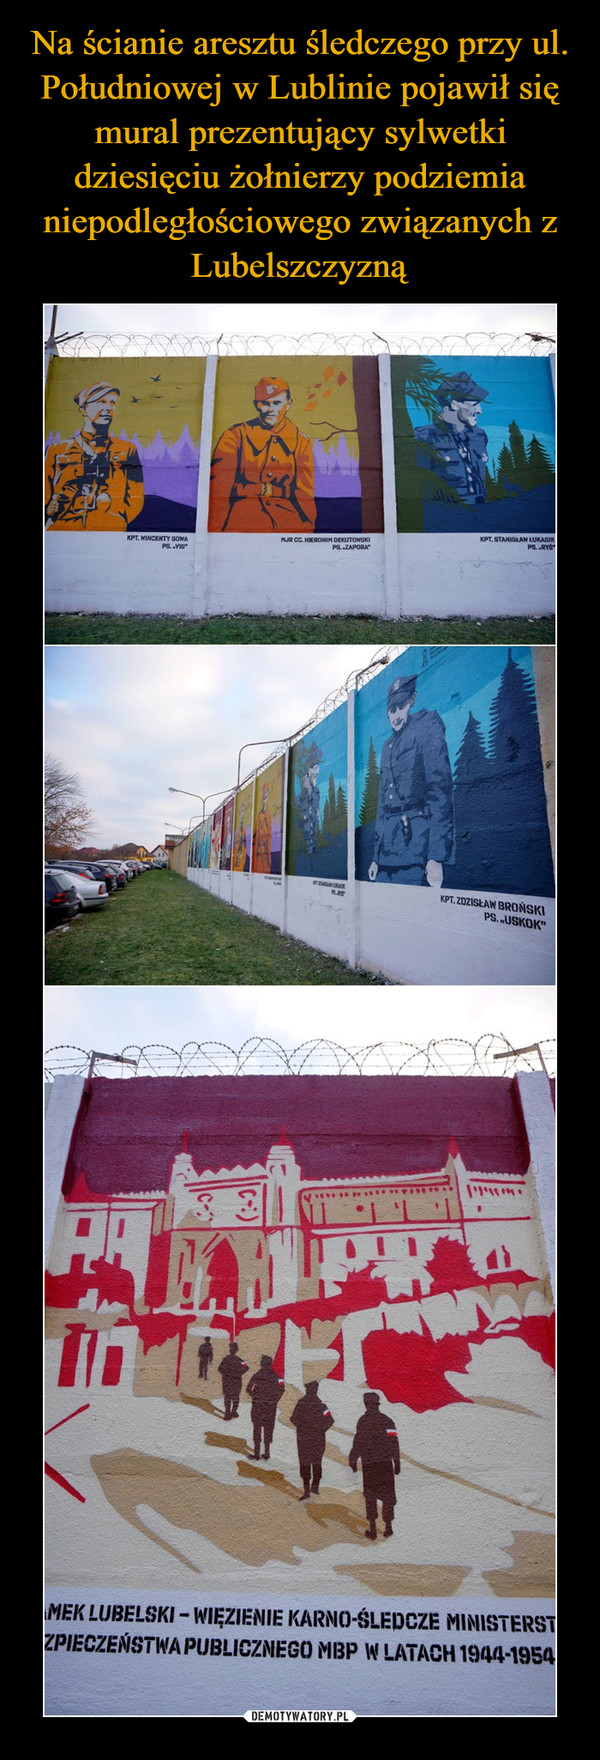 Na ścianie aresztu śledczego przy ul. Południowej w Lublinie pojawił się mural prezentujący sylwetki dziesięciu żołnierzy podziemia niepodległościowego związanych z Lubelszczyzną